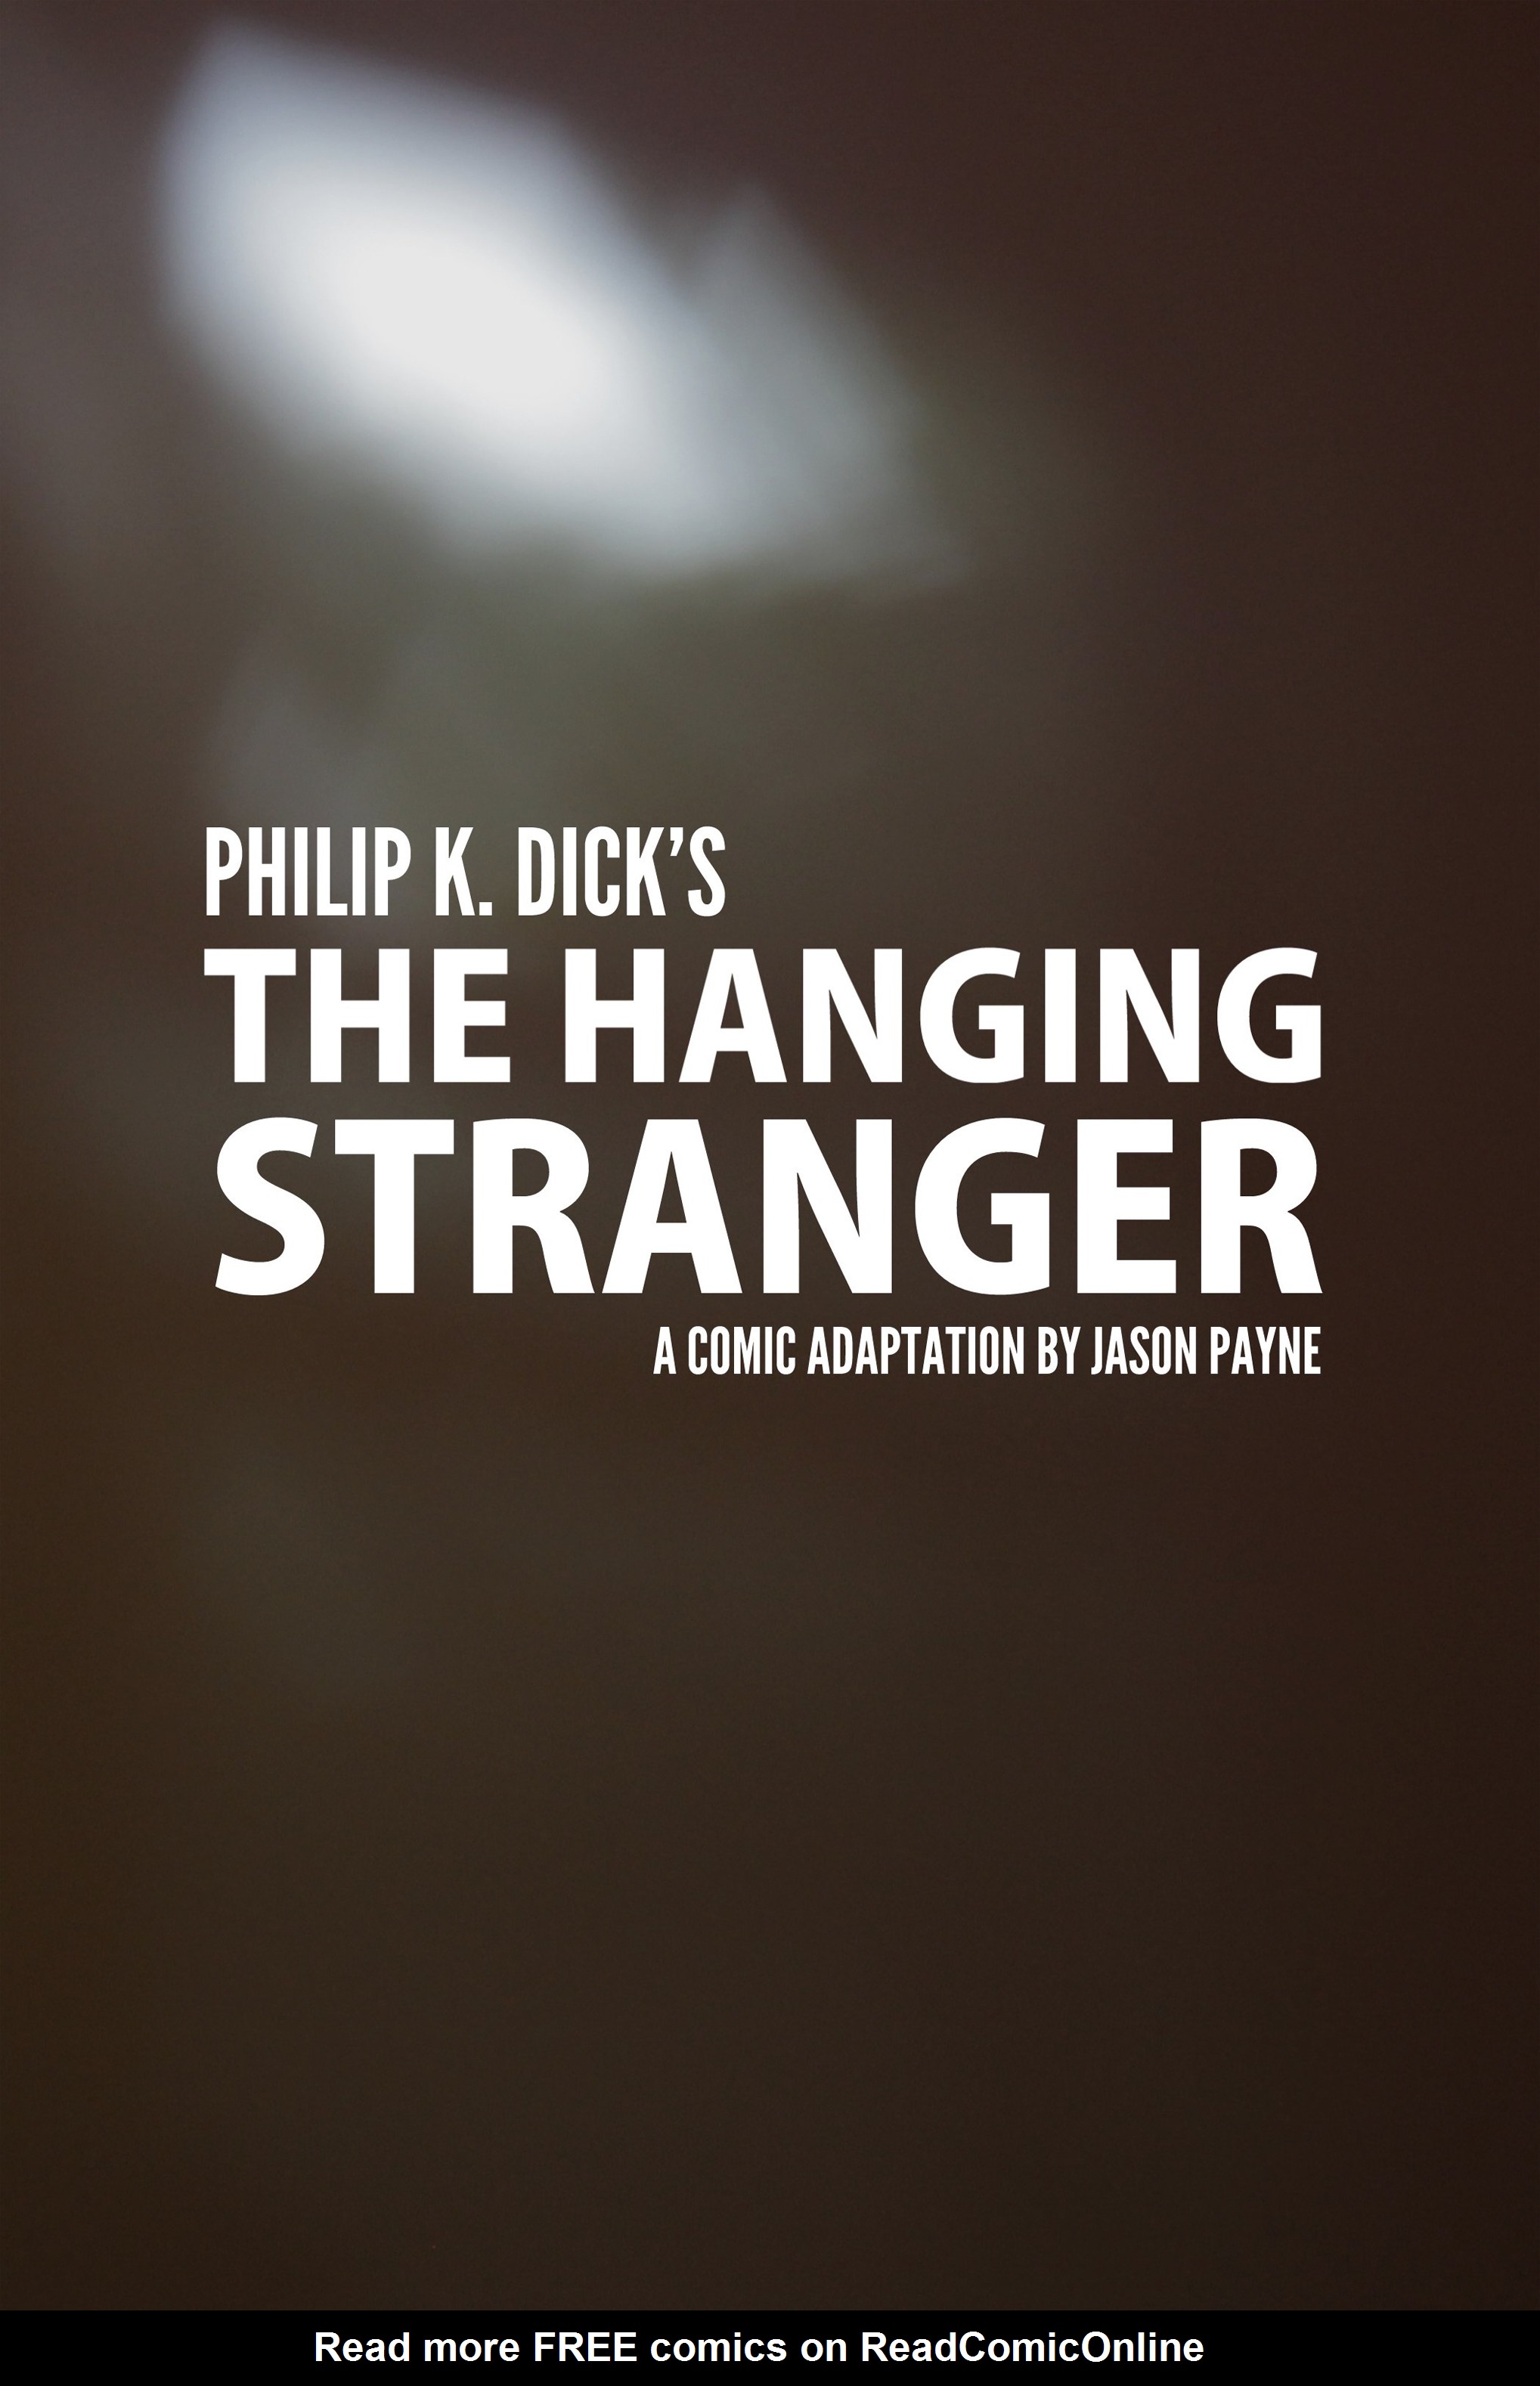 Read online Philip K. Dick's The Hanging Stranger comic -  Issue # Full - 1